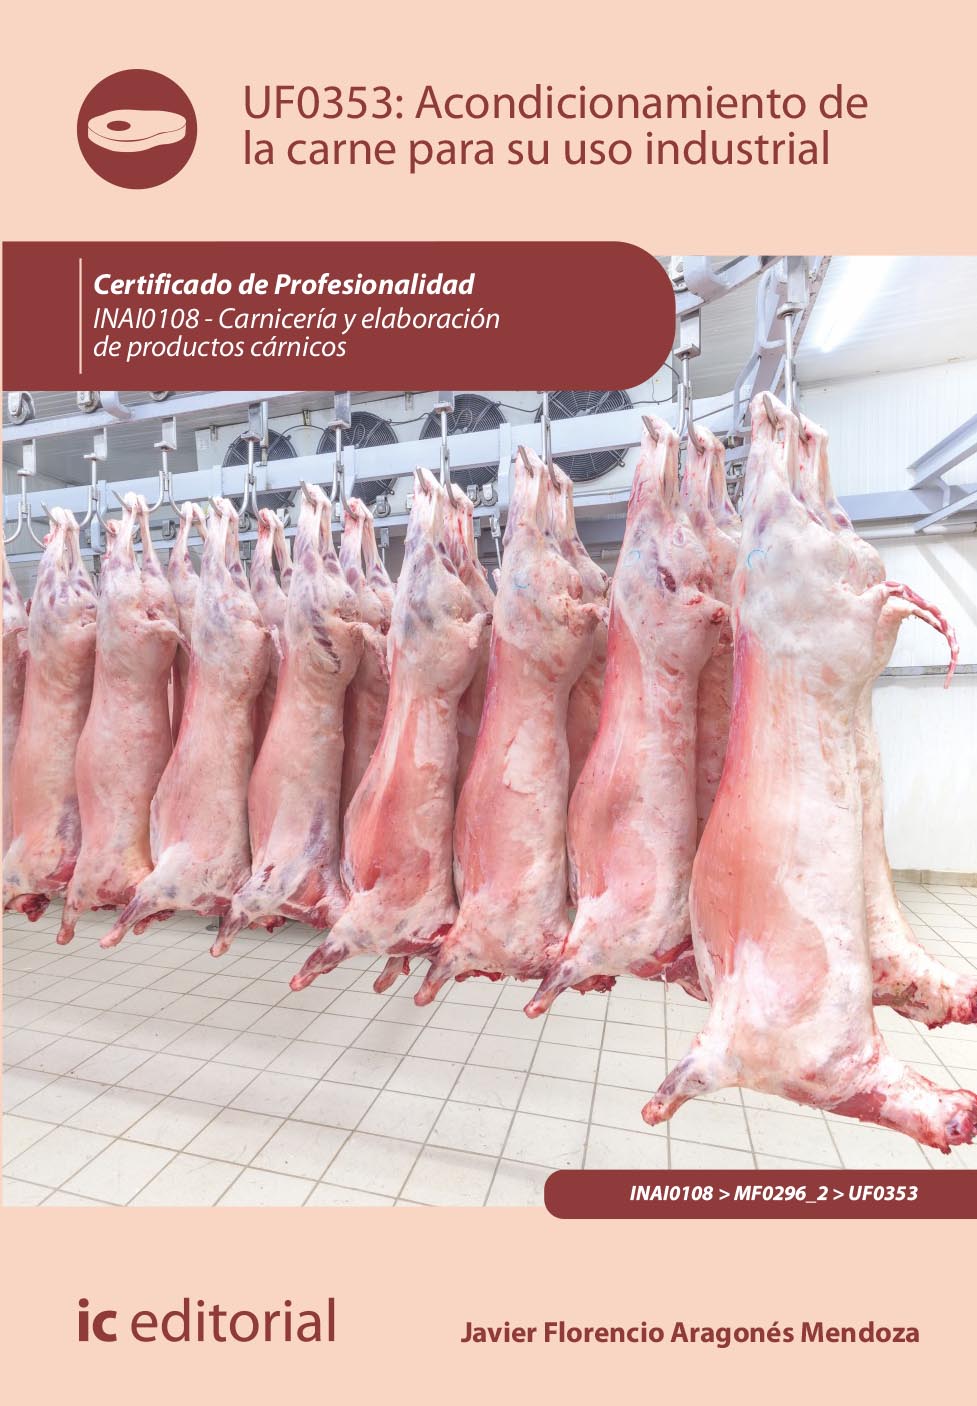 Acondicionamiento de la carne para su uso industrial. INAI0108 - Carnicería y elaboración de productos cárnicos